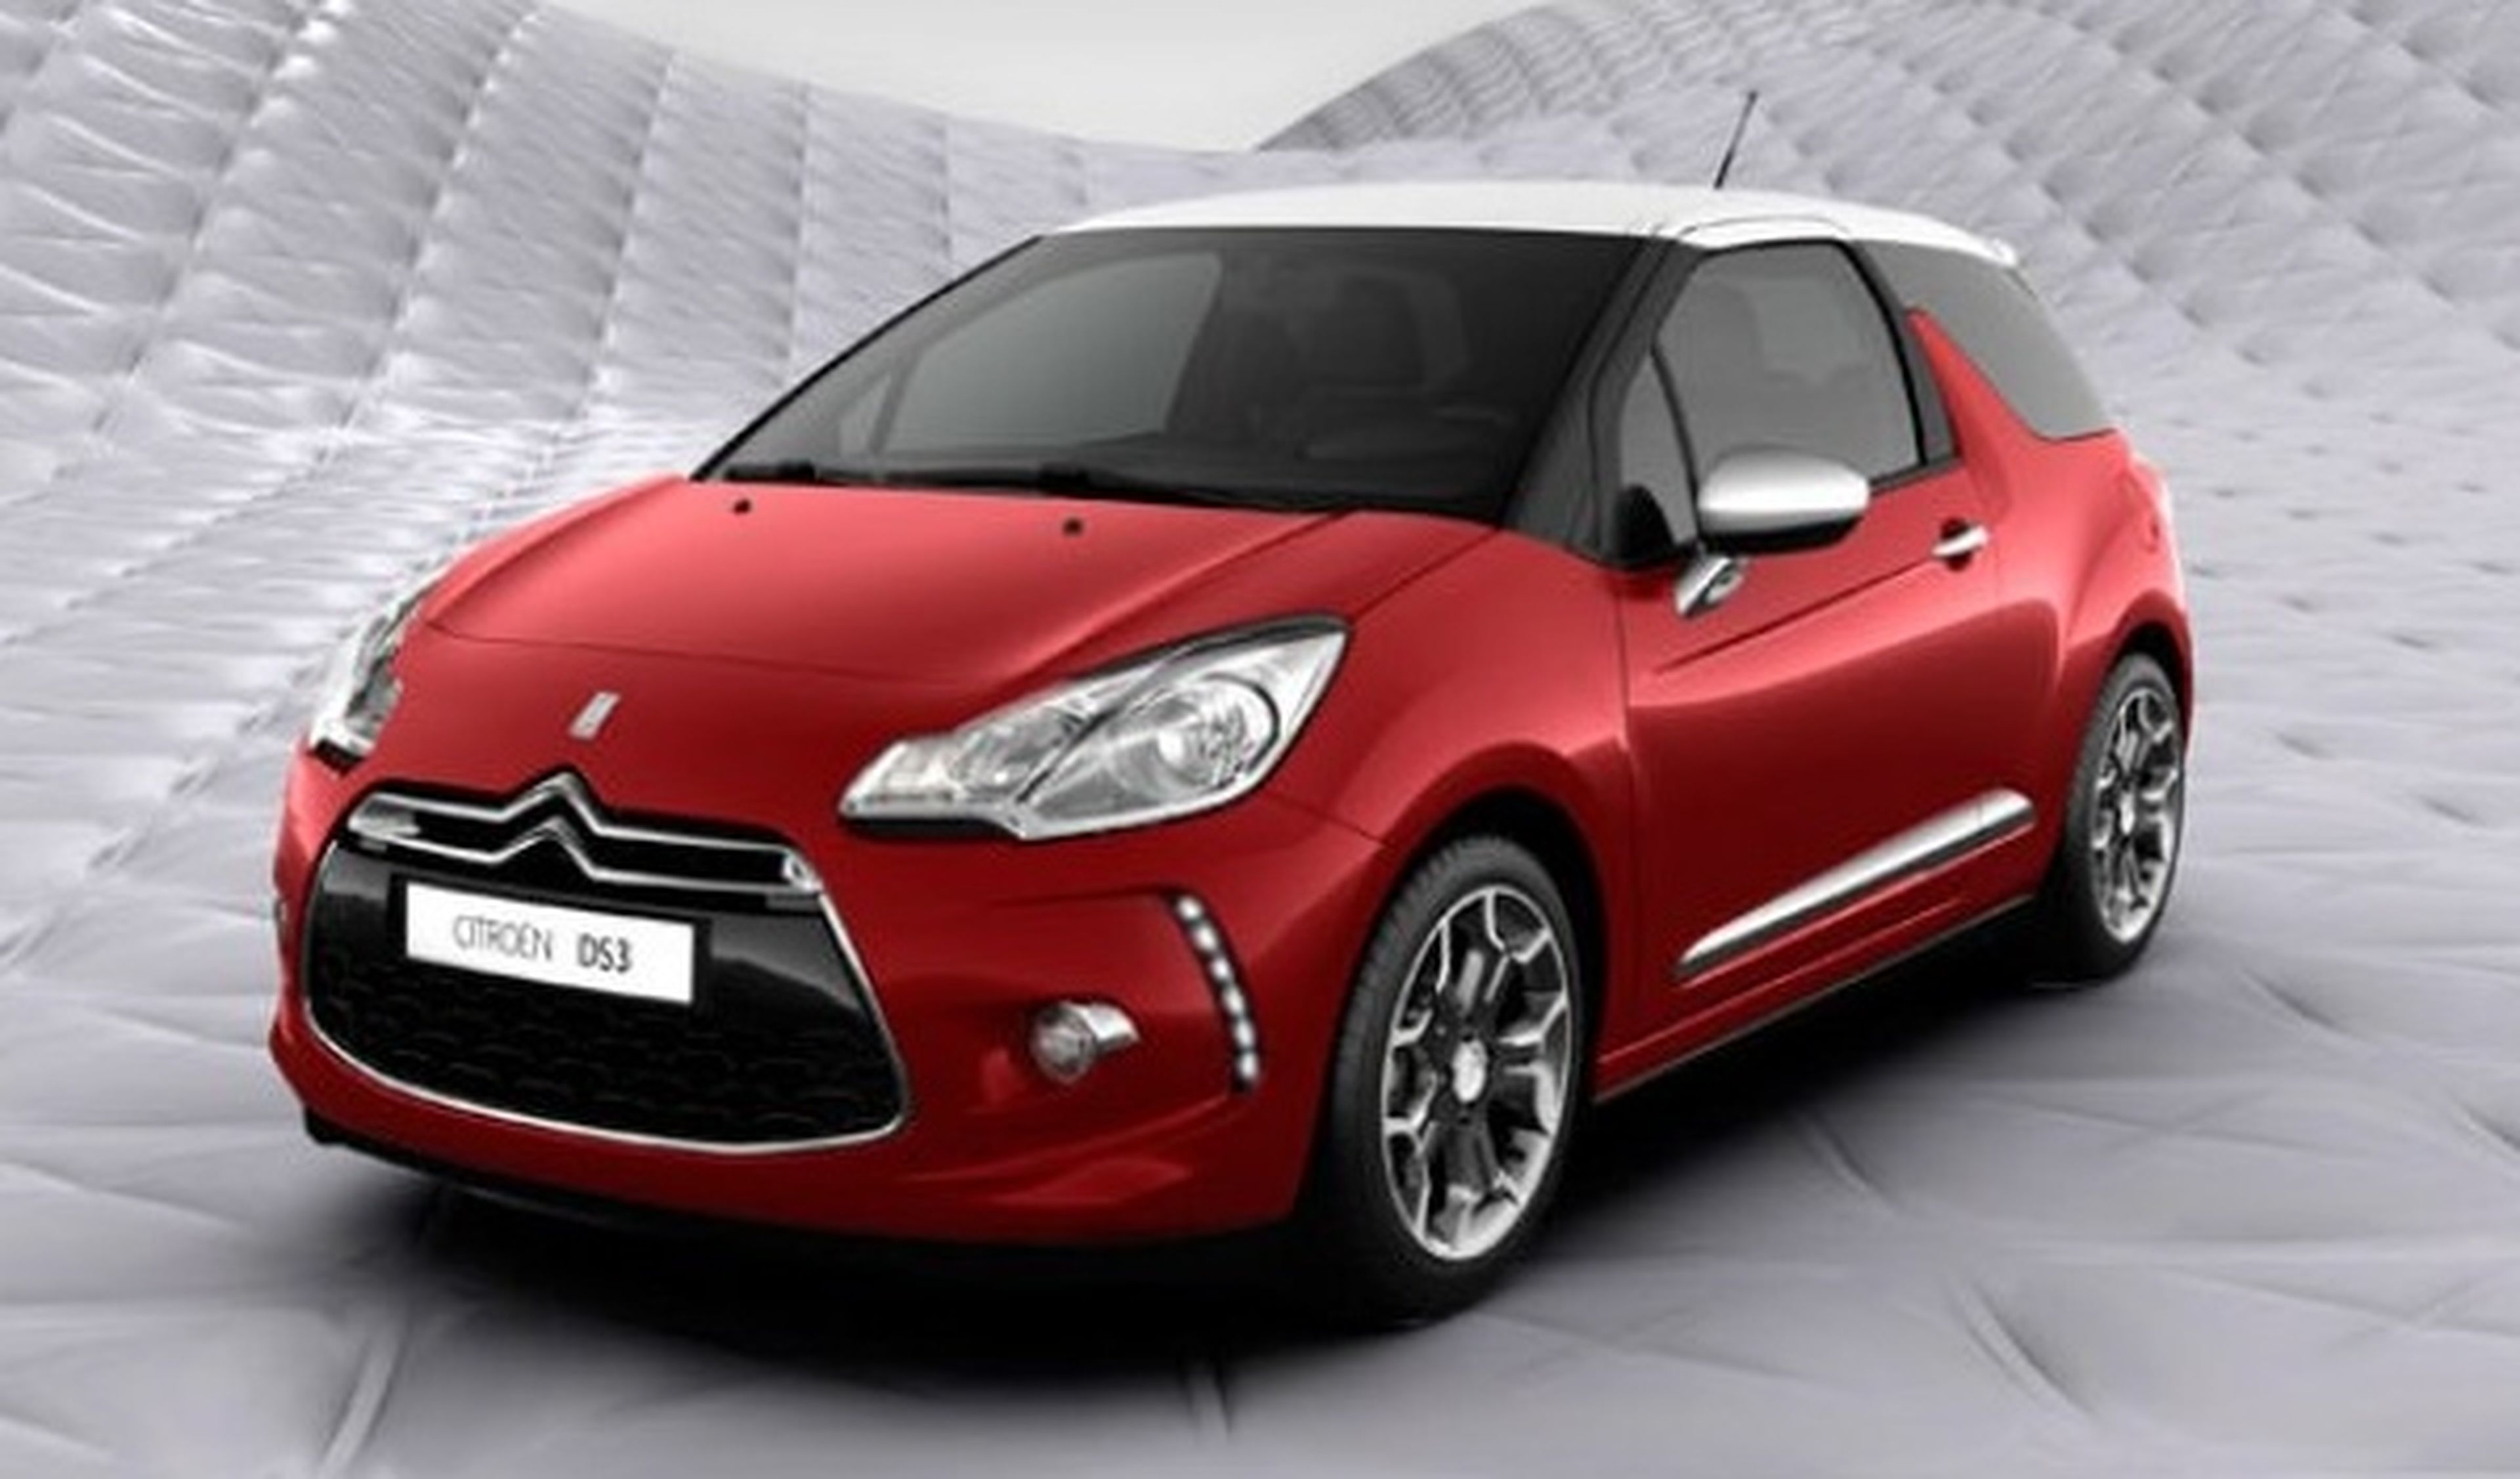 Citroën lanzará una versión descapotable del DS3